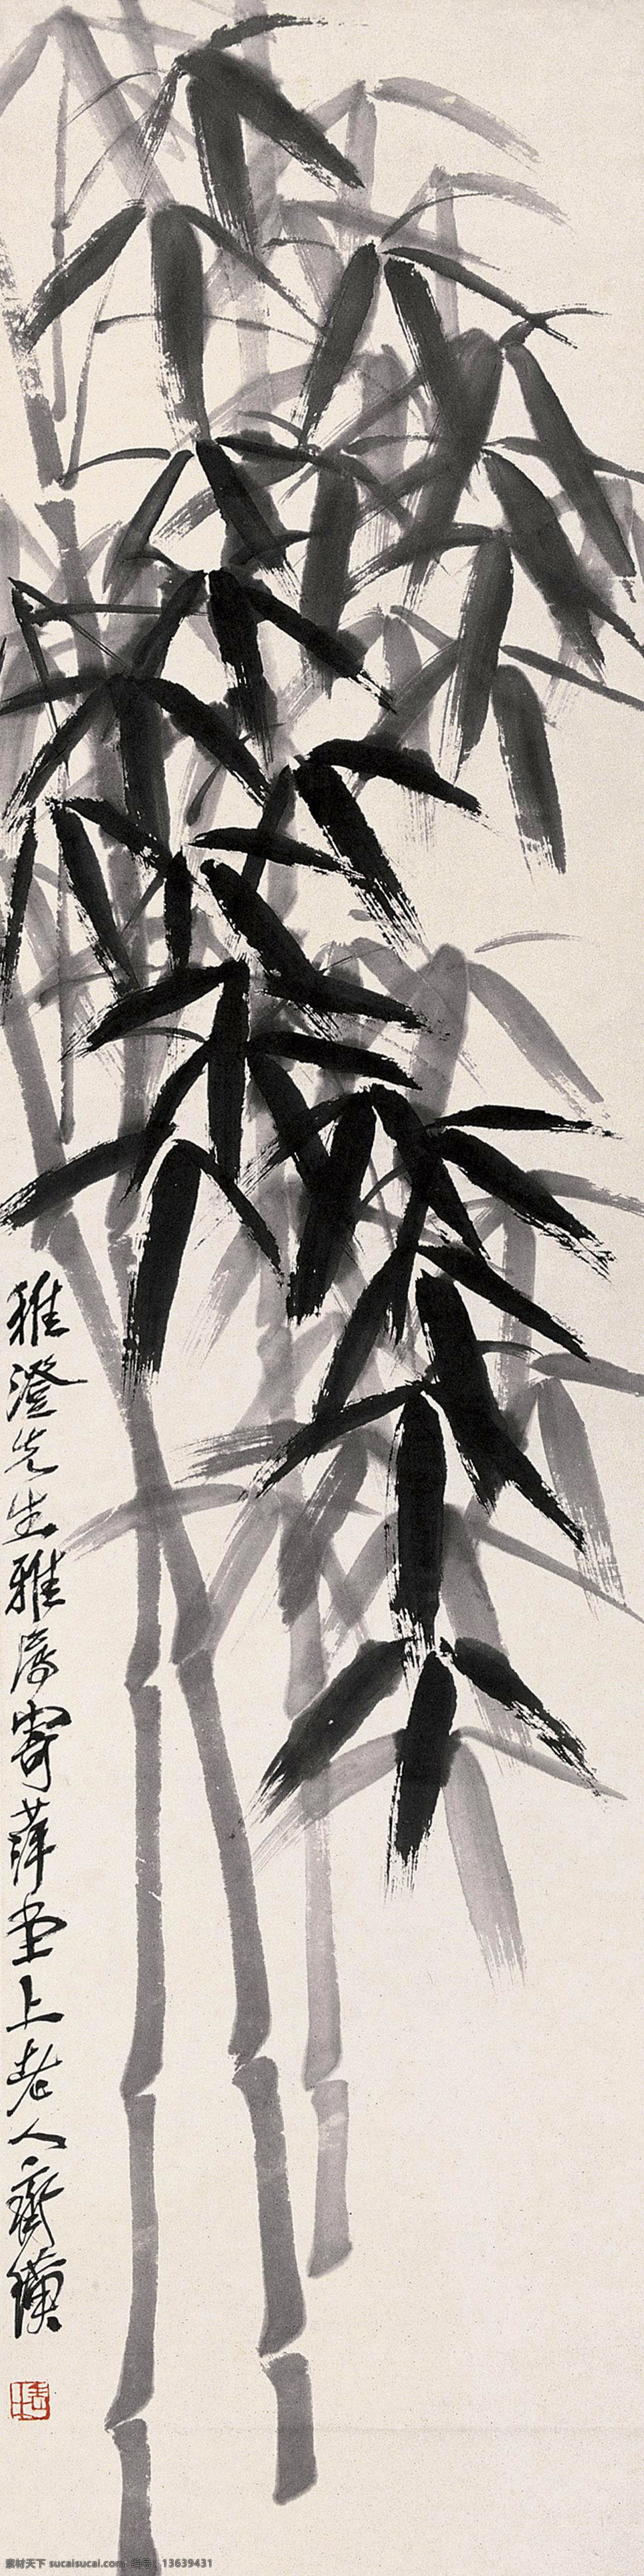 墨竹 国画 齐白石 竹子 翠竹 文化艺术 绘画书法 花卉 草虫